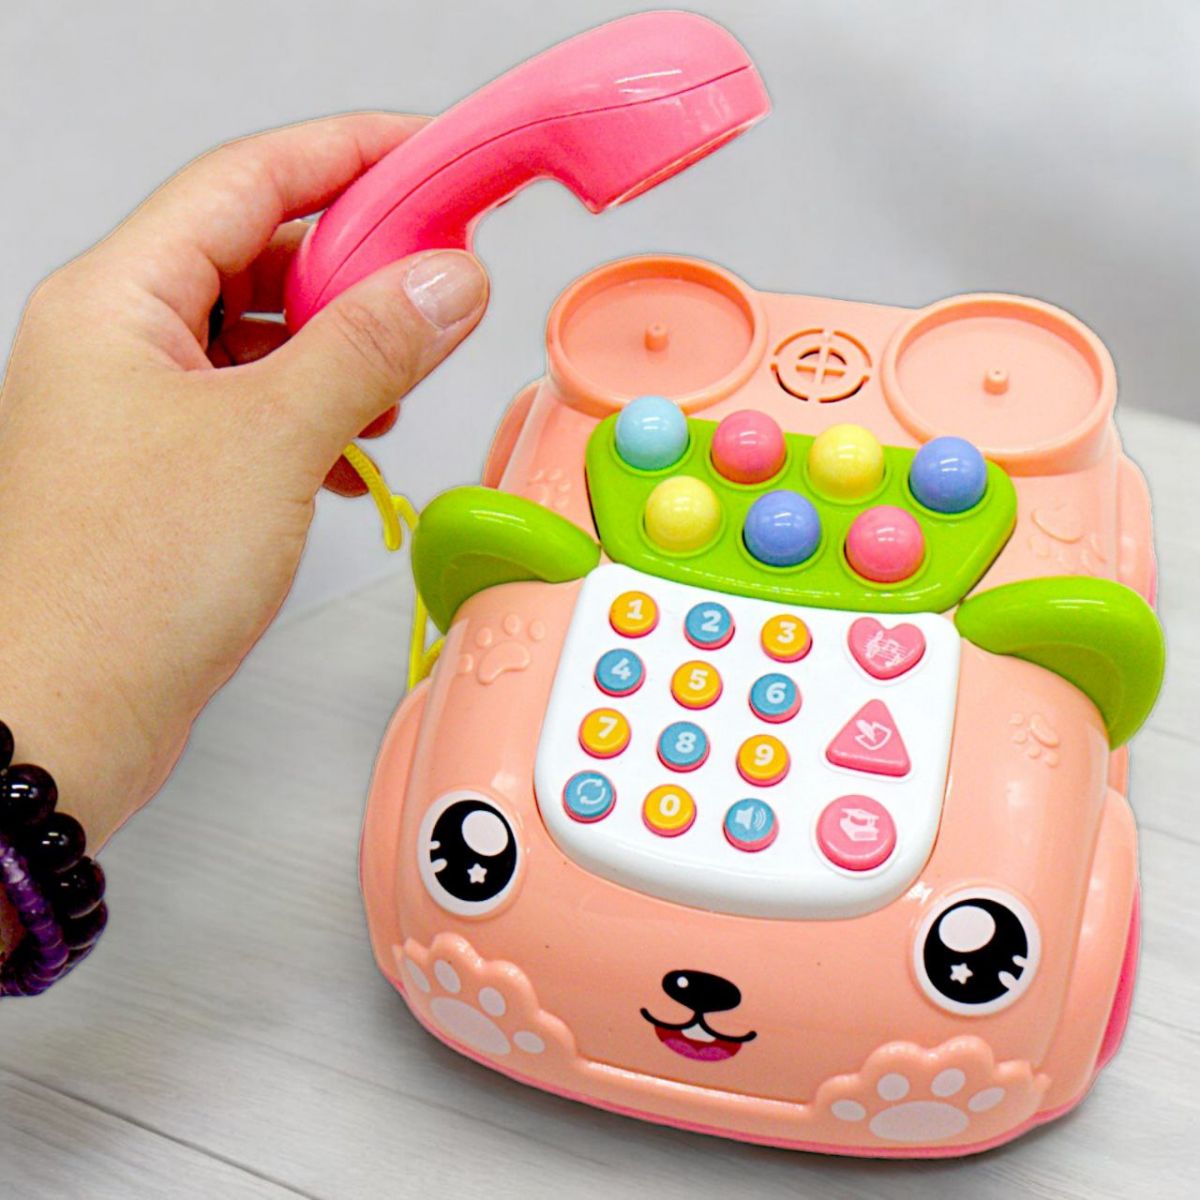 Интерактивная игрушка "Телефончик на колесах", розовый